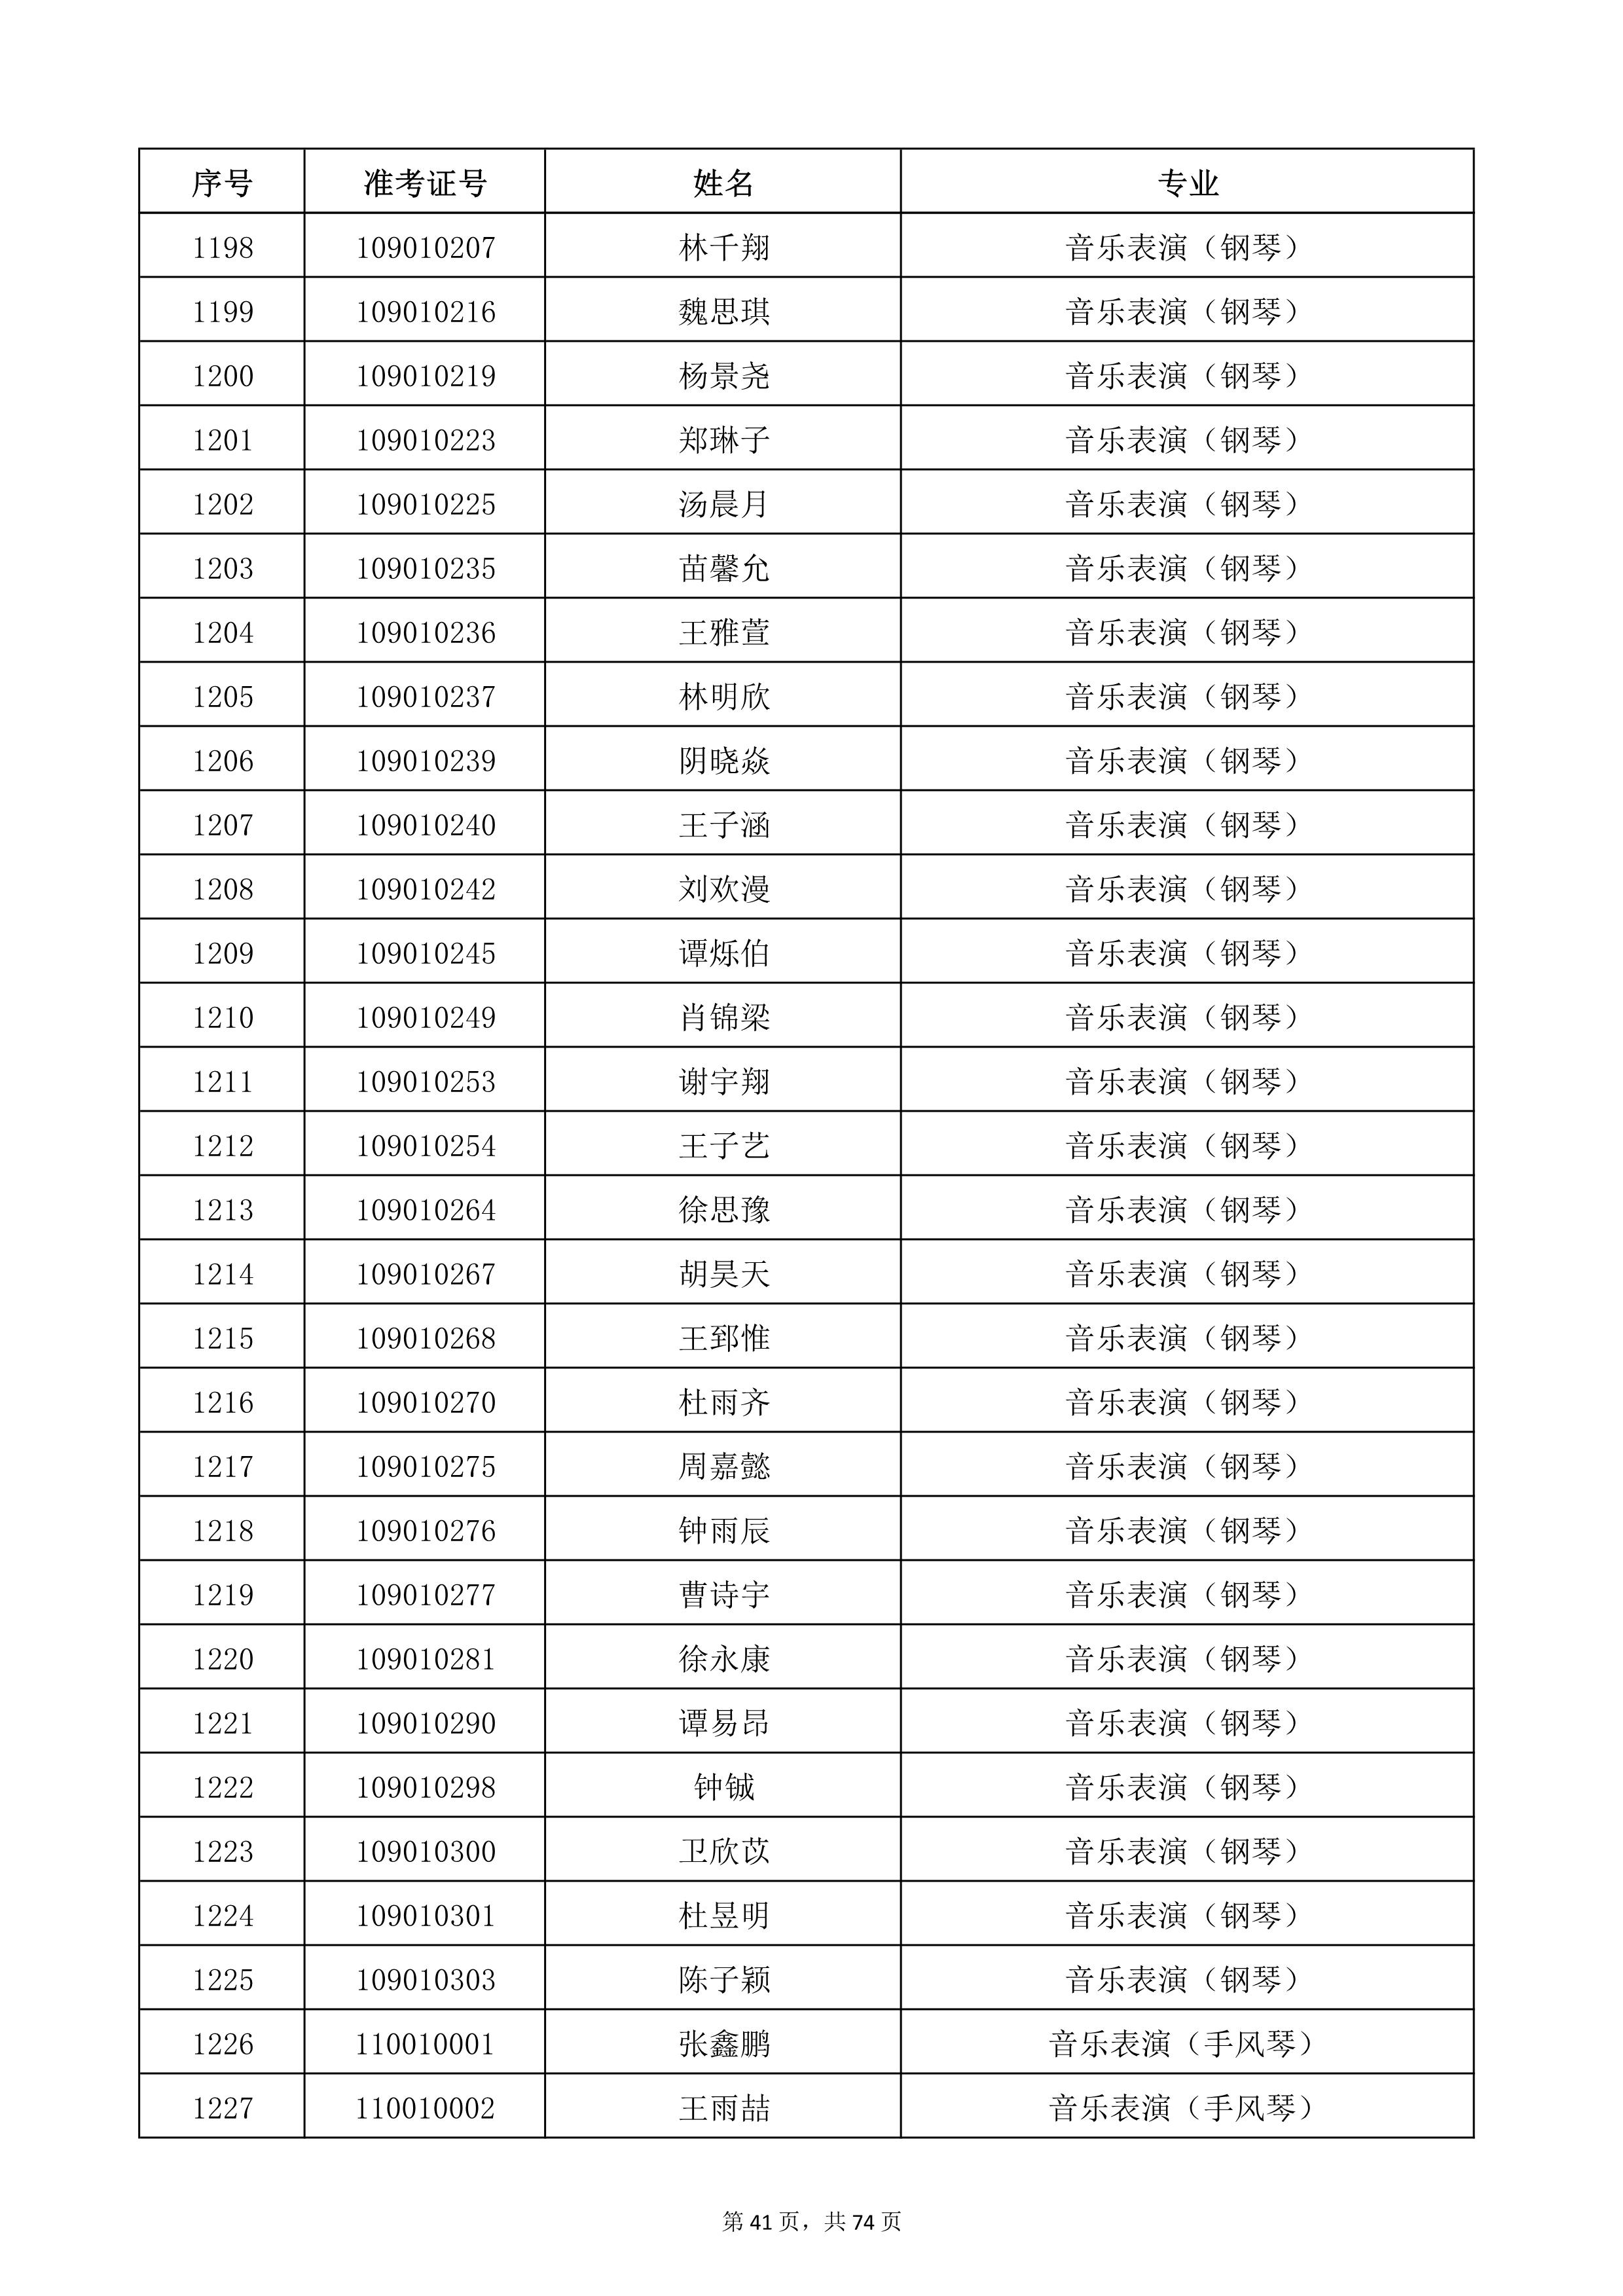 天津音乐学院2022年本科招生考试复试名单_41.jpg